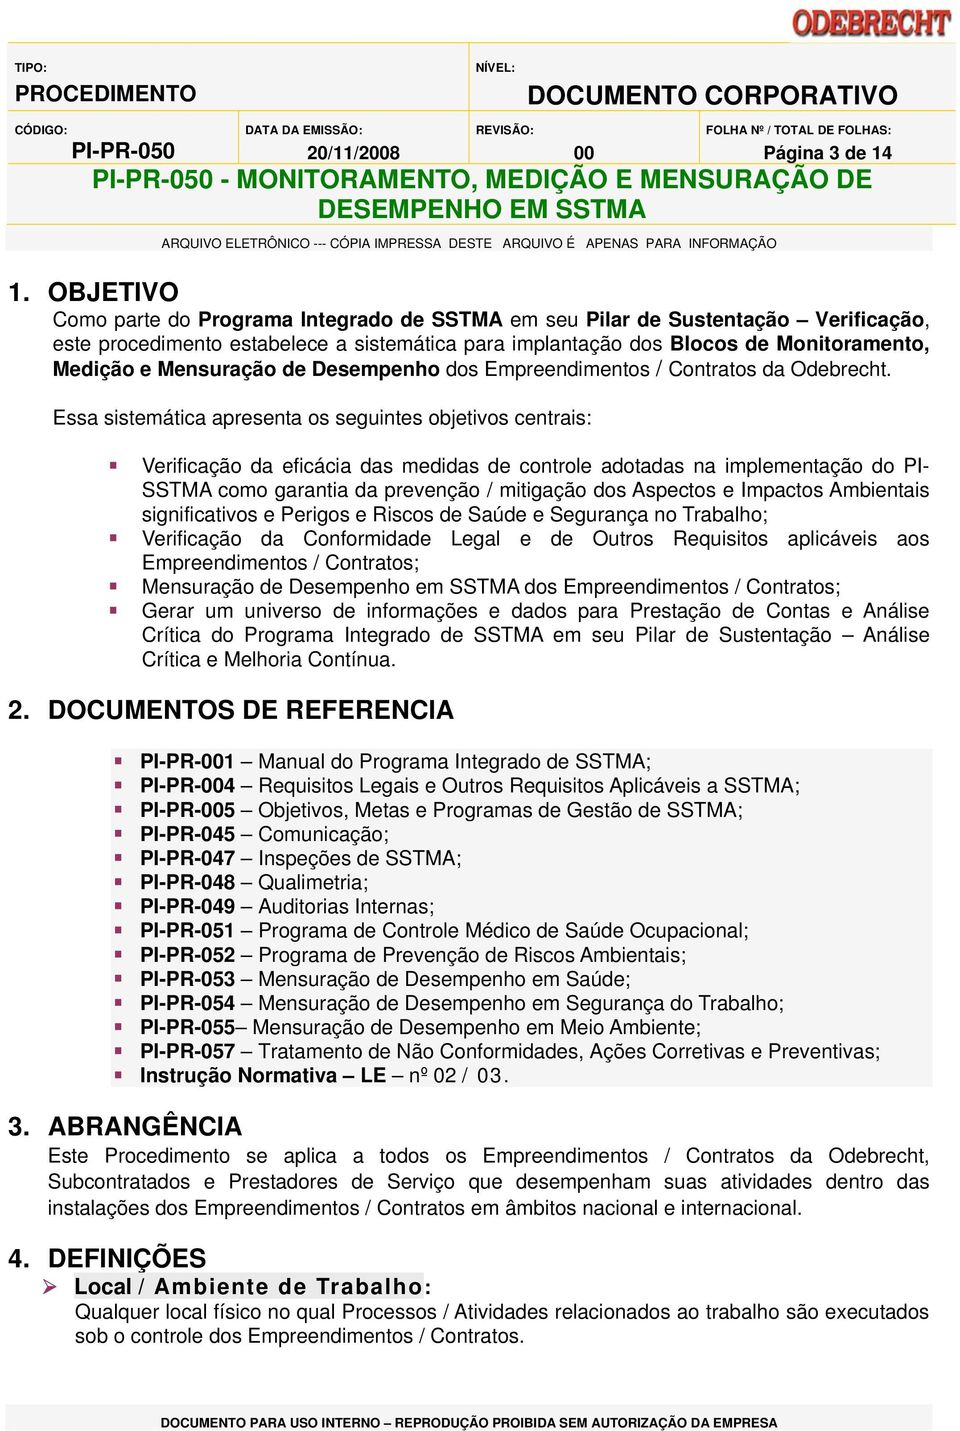 Mensuração de Desempenho dos Empreendimentos / Contratos da Odebrecht.